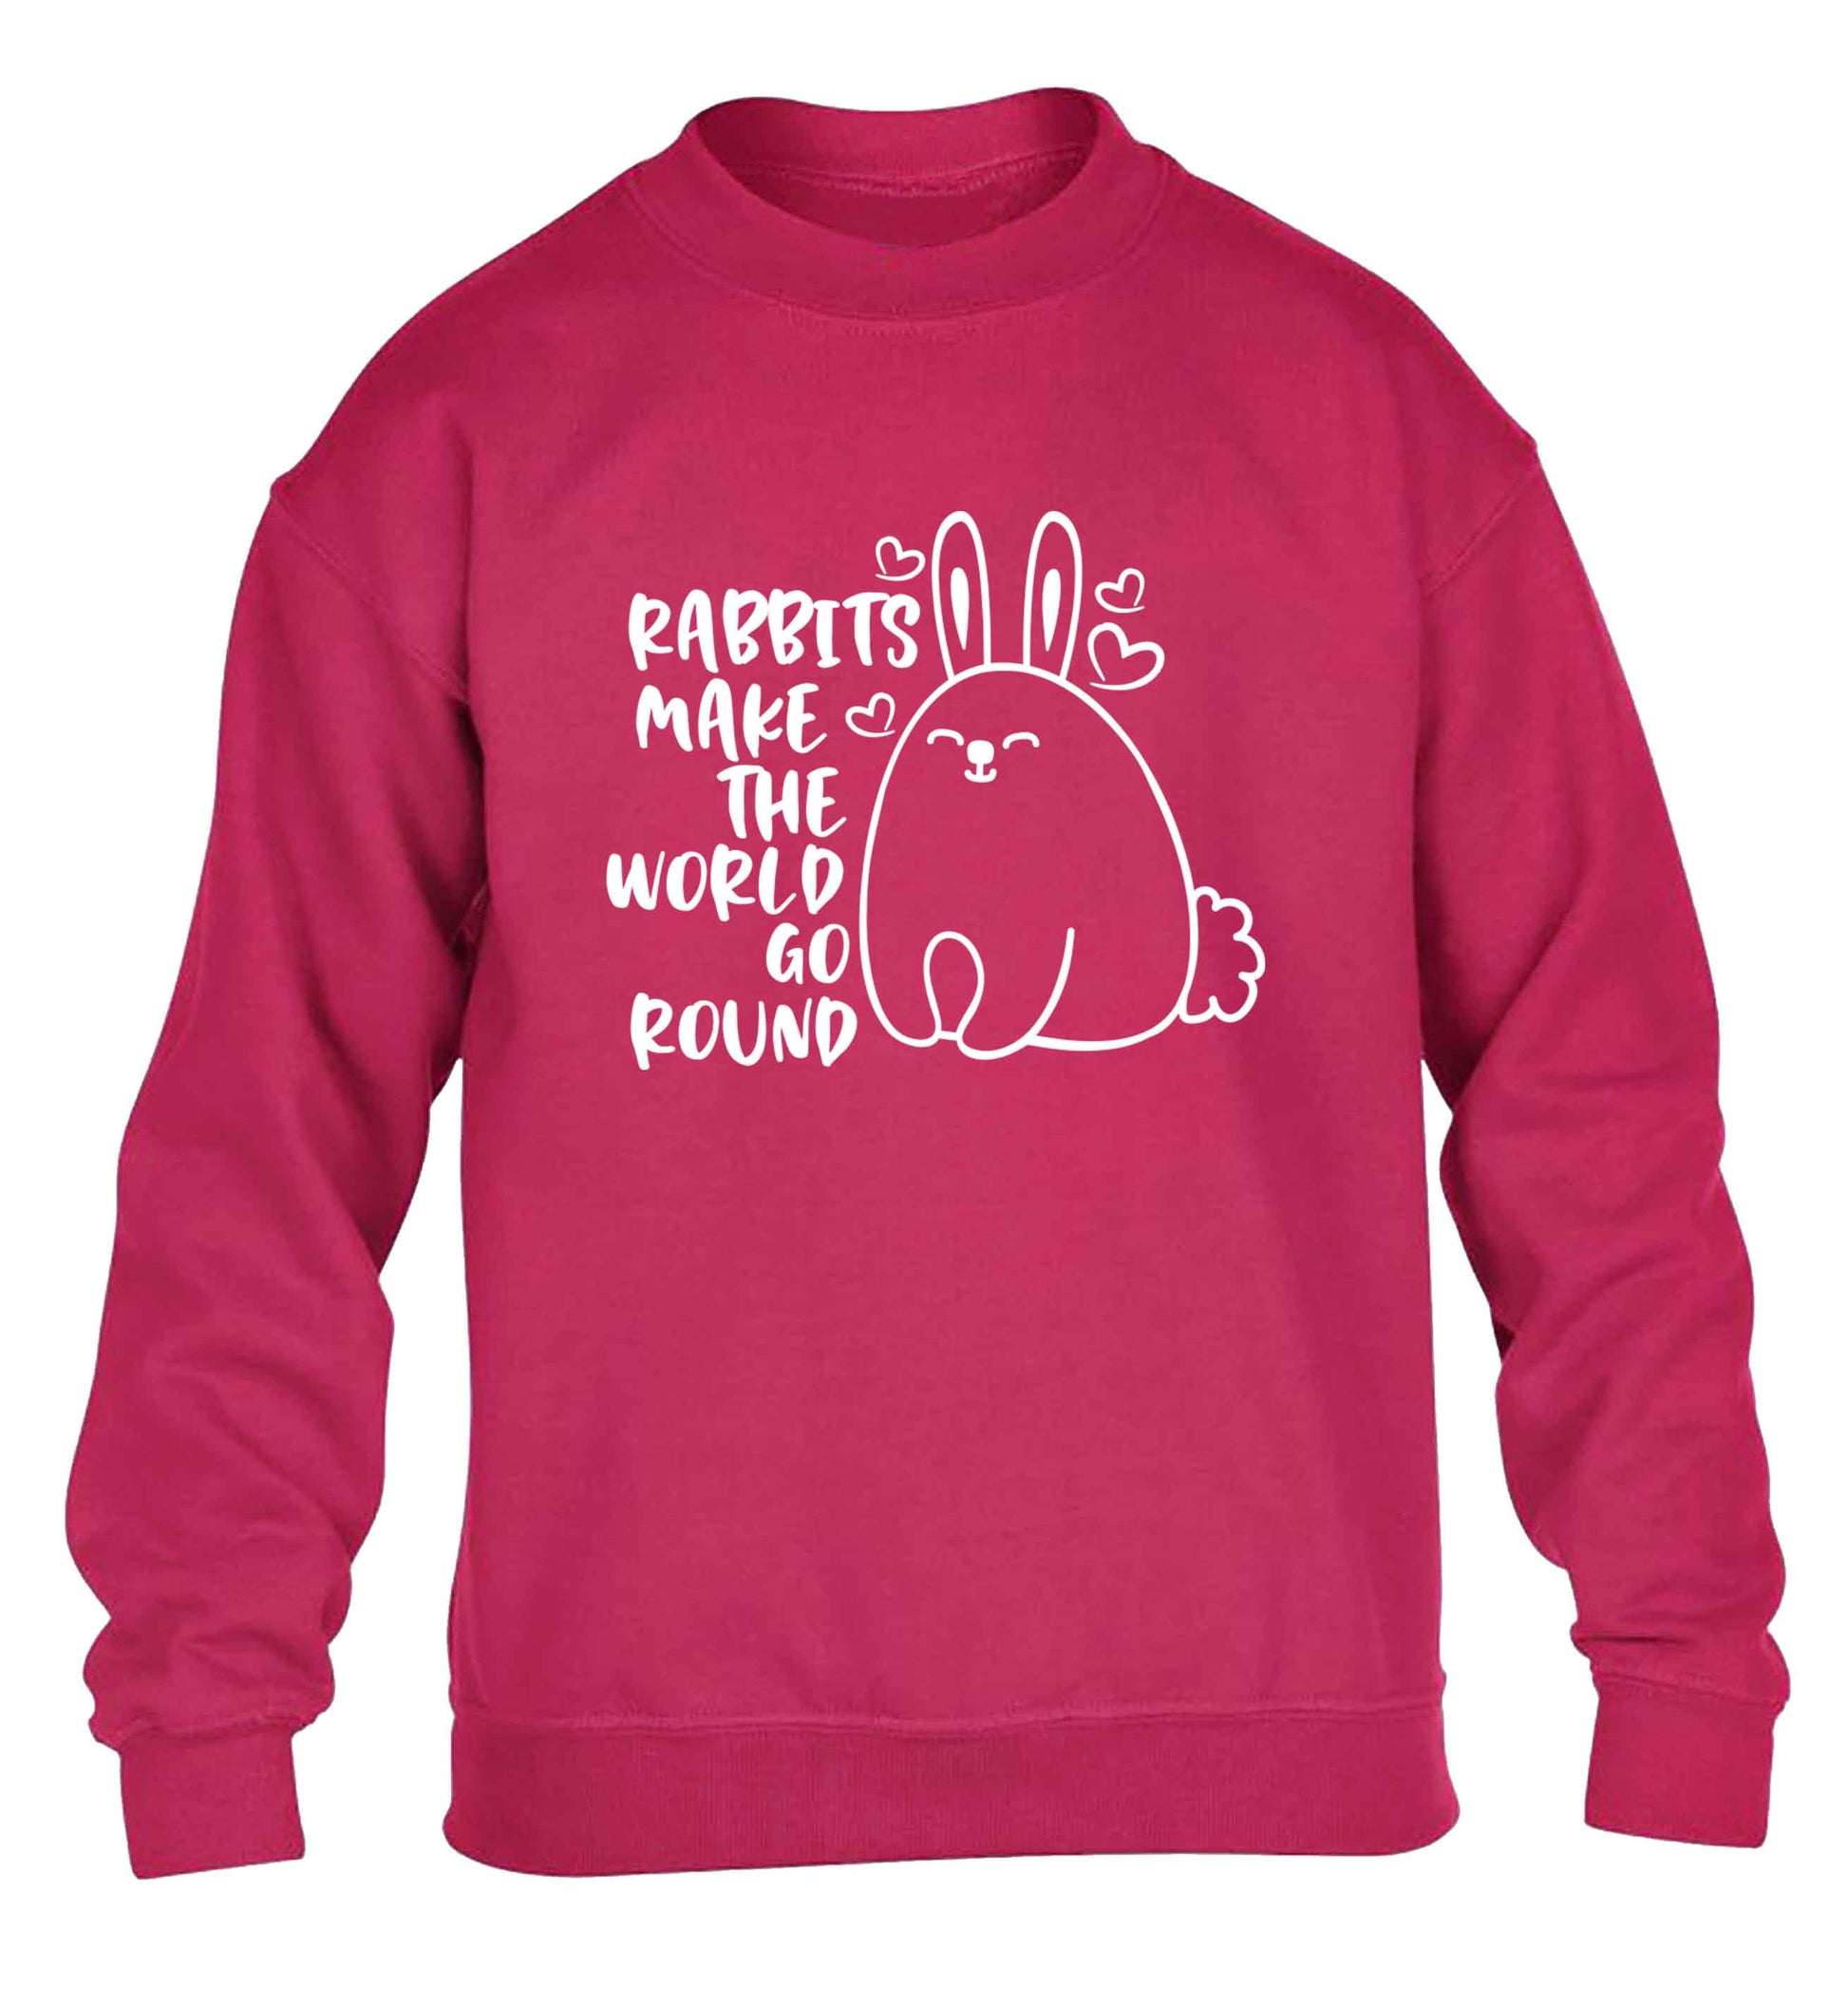 Rabbits make the world go round children's pink sweater 12-13 Years